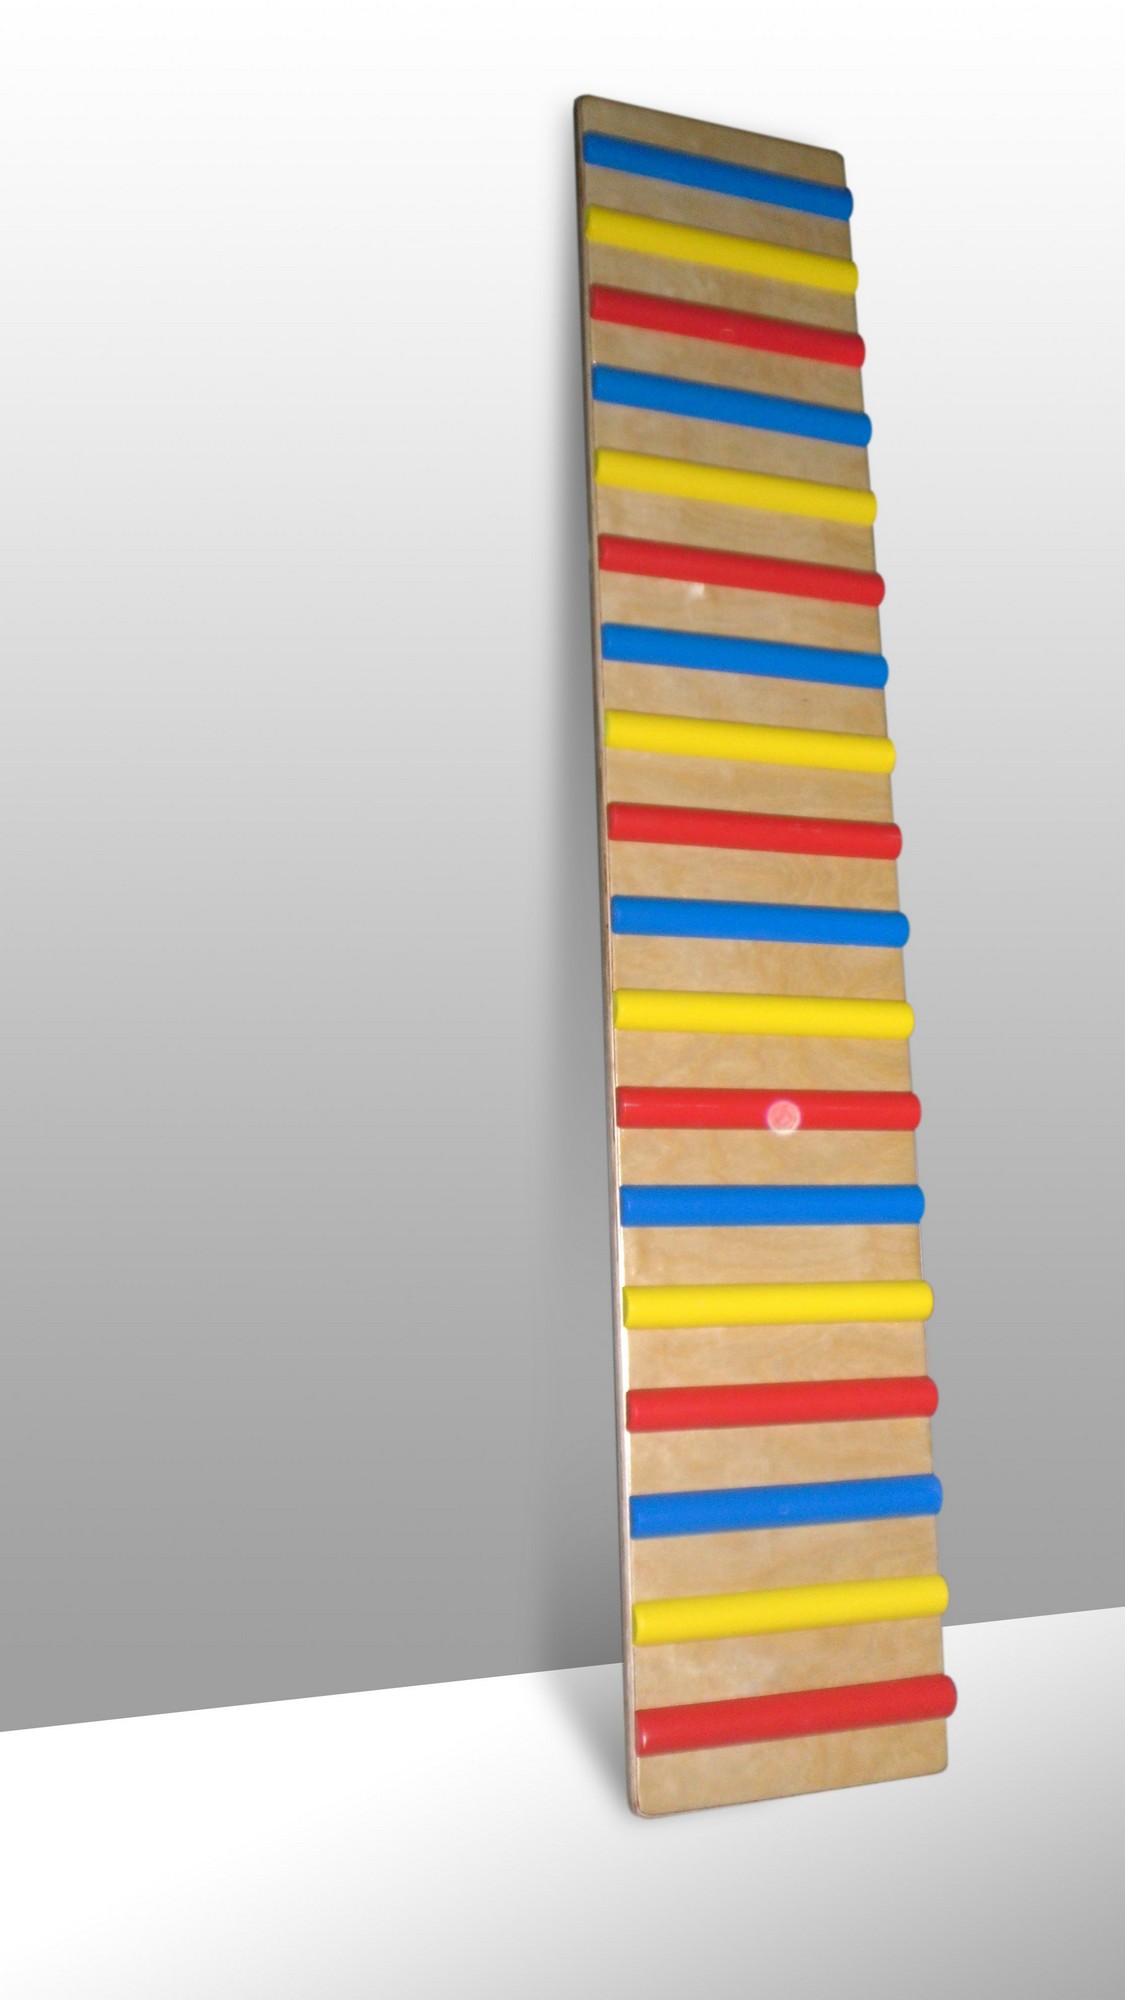 фото Доска наклонная навесная ребристая фси 1,6 м, дерево, с цветными рейками 9394